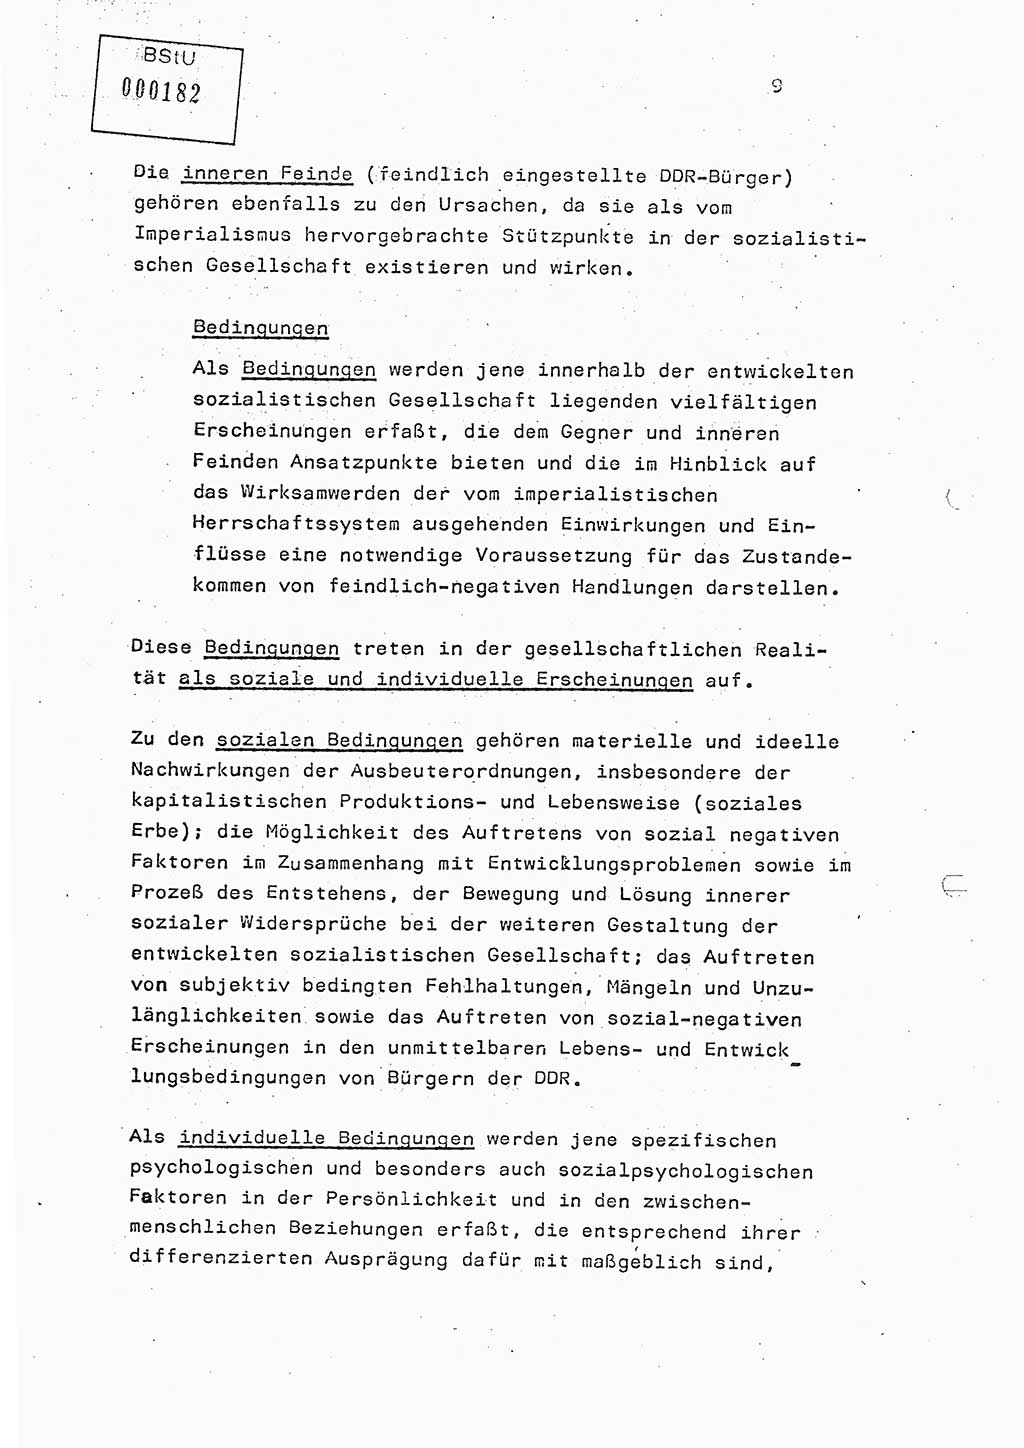 Studienmaterial Ministerium für Staatssicherheit (MfS) [Deutsche Demokratische Republik (DDR)], Hauptabteilung (HA) Ⅸ/ Auswertungs- und Kontrollgruppe (AKG), Berlin ca. 1986, Seite 9 (Stud.-Mat. MfS DDR HA Ⅸ/AKG 1986, S. 9)